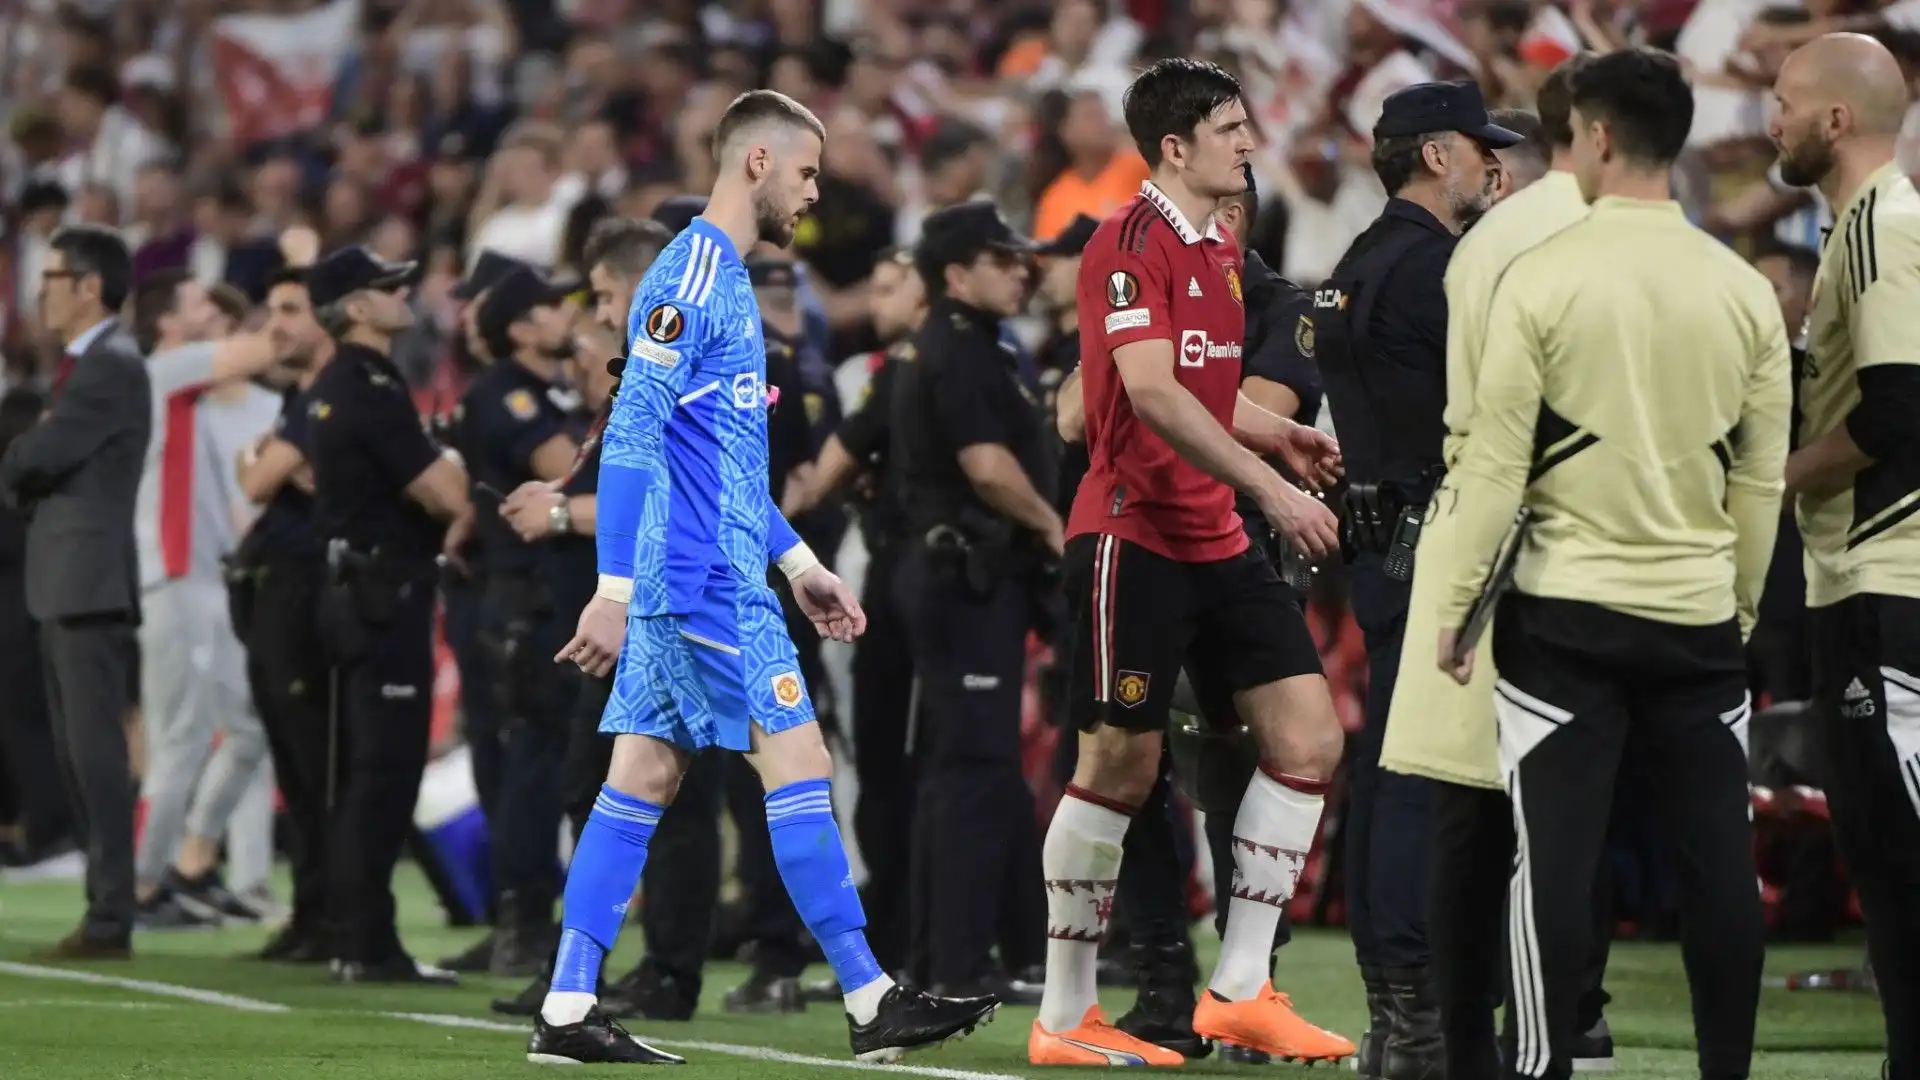 Al termine della partita contro il Siviglia, i calciatori dello United erano molto delusi